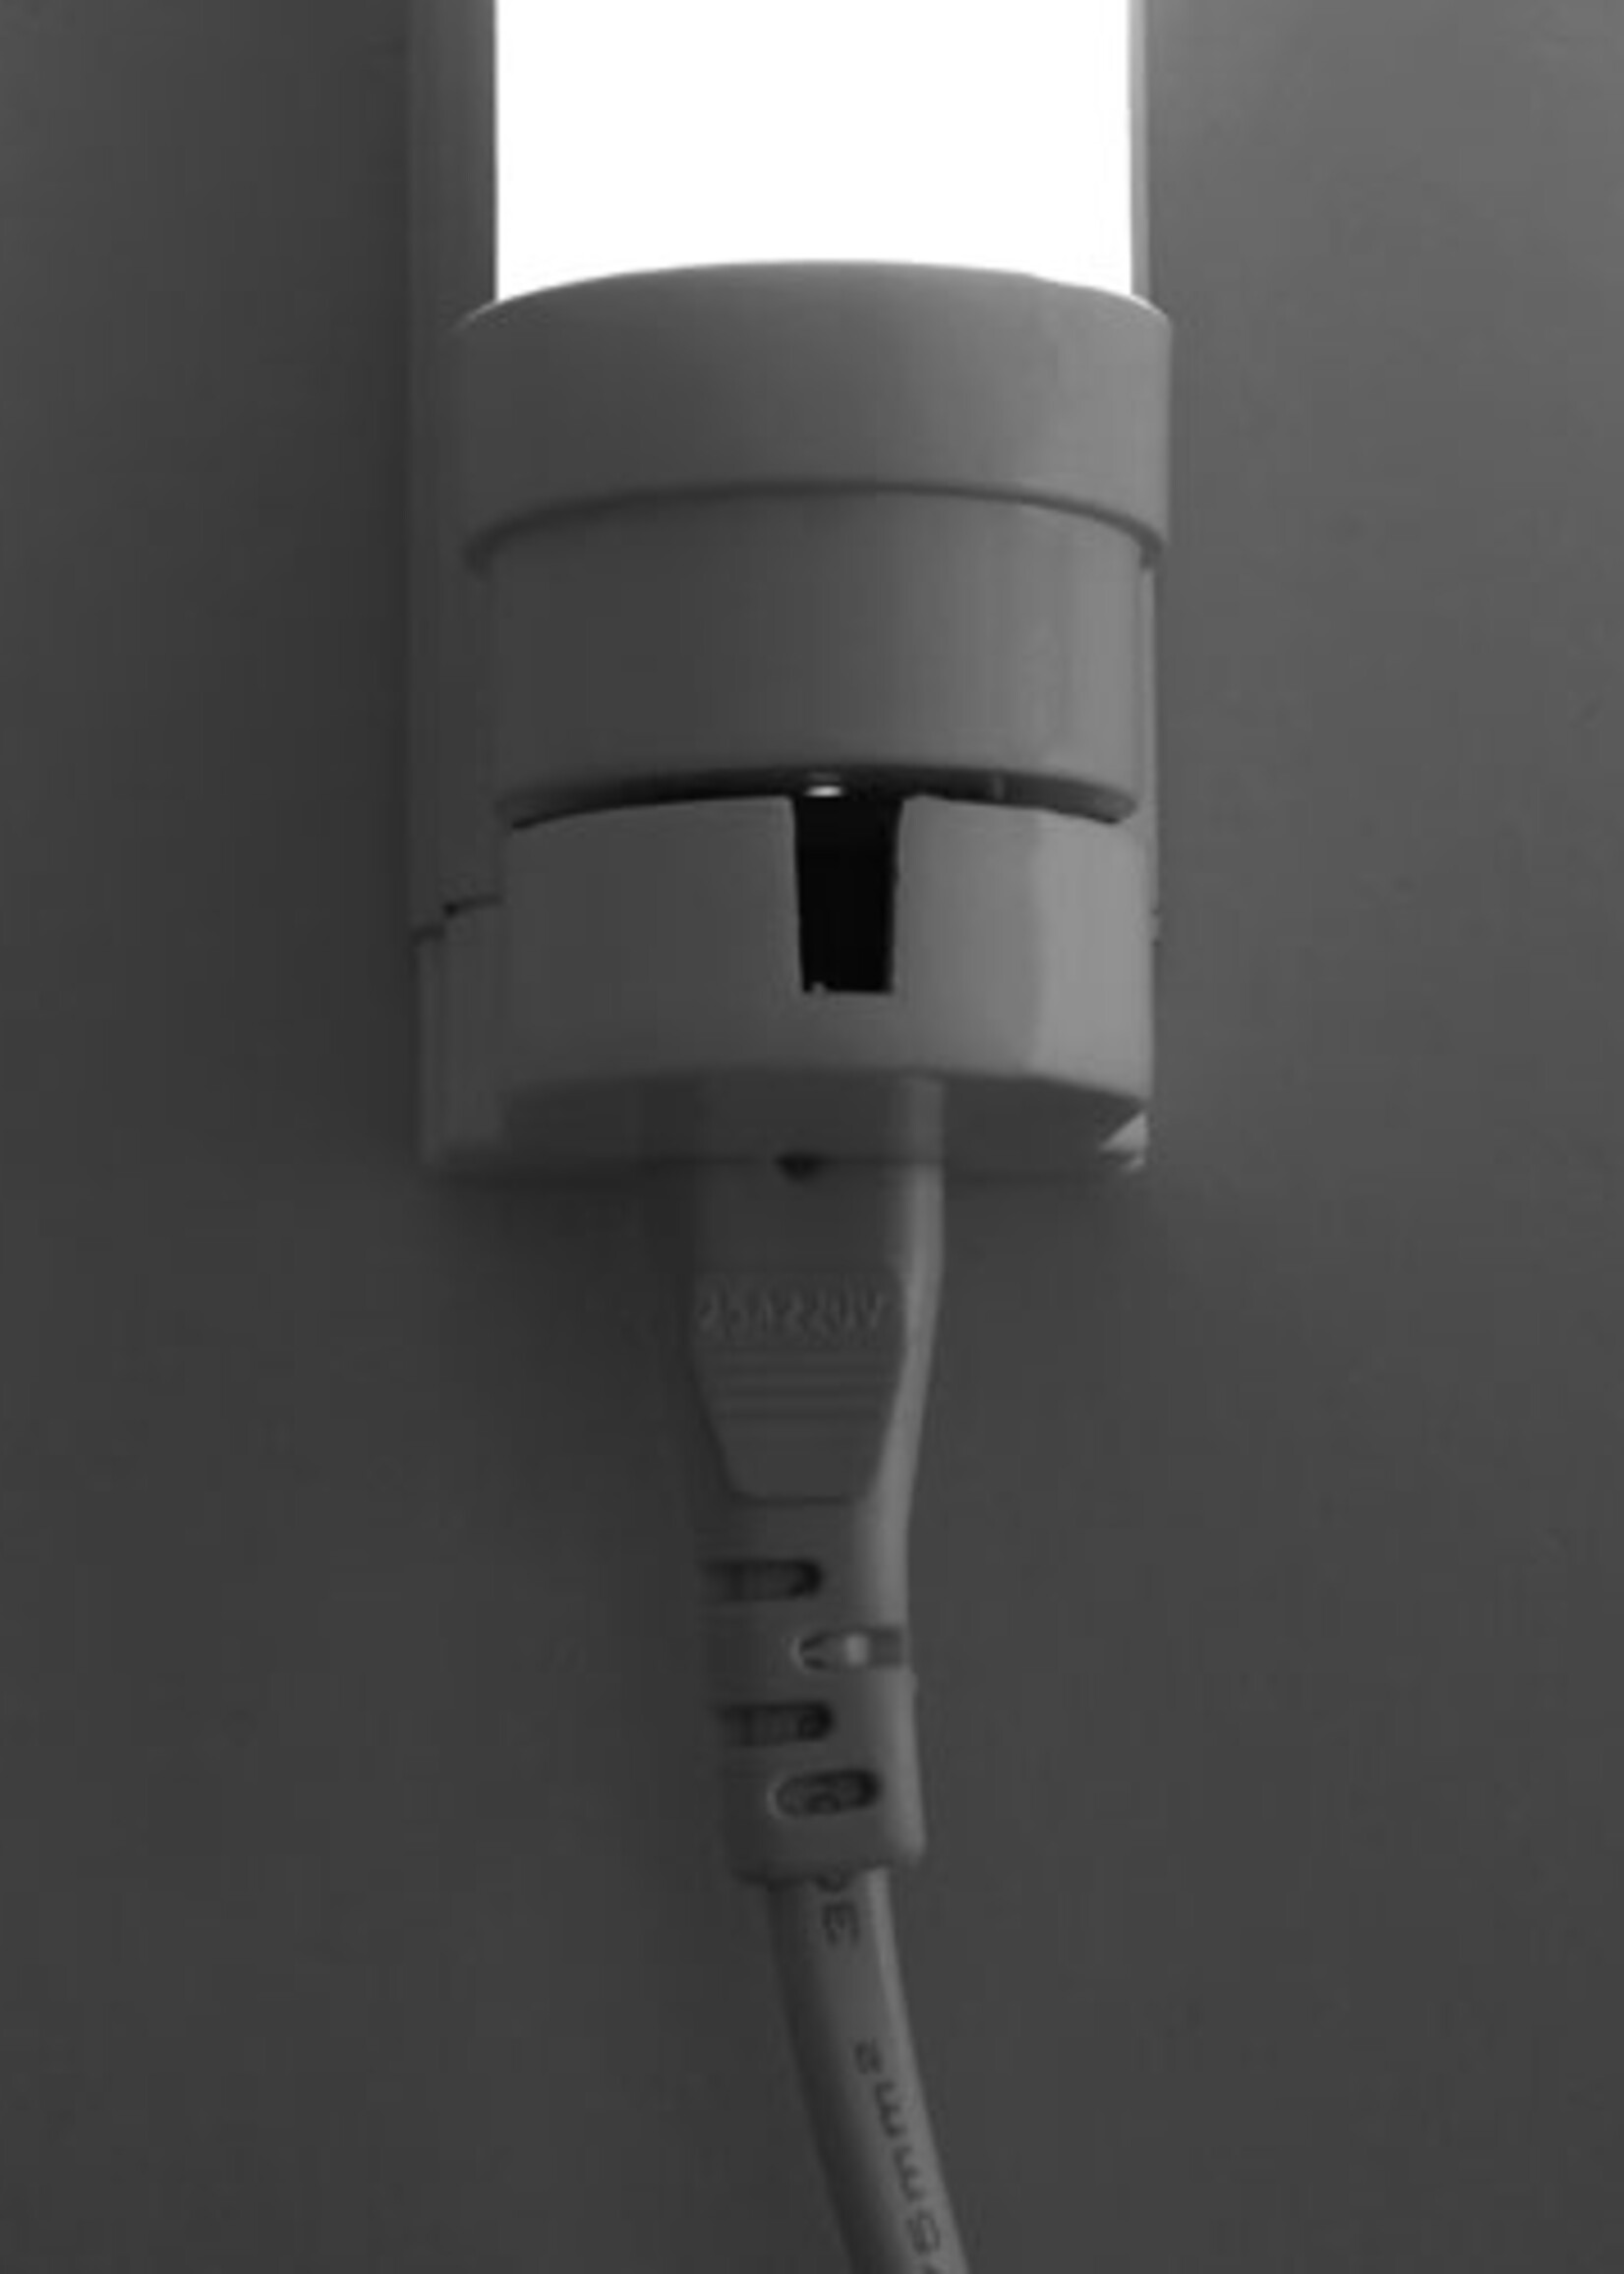 LEDWINKEL-Online LED TL Buis T8 60cm 9W 140lm/W - Pro High lumen